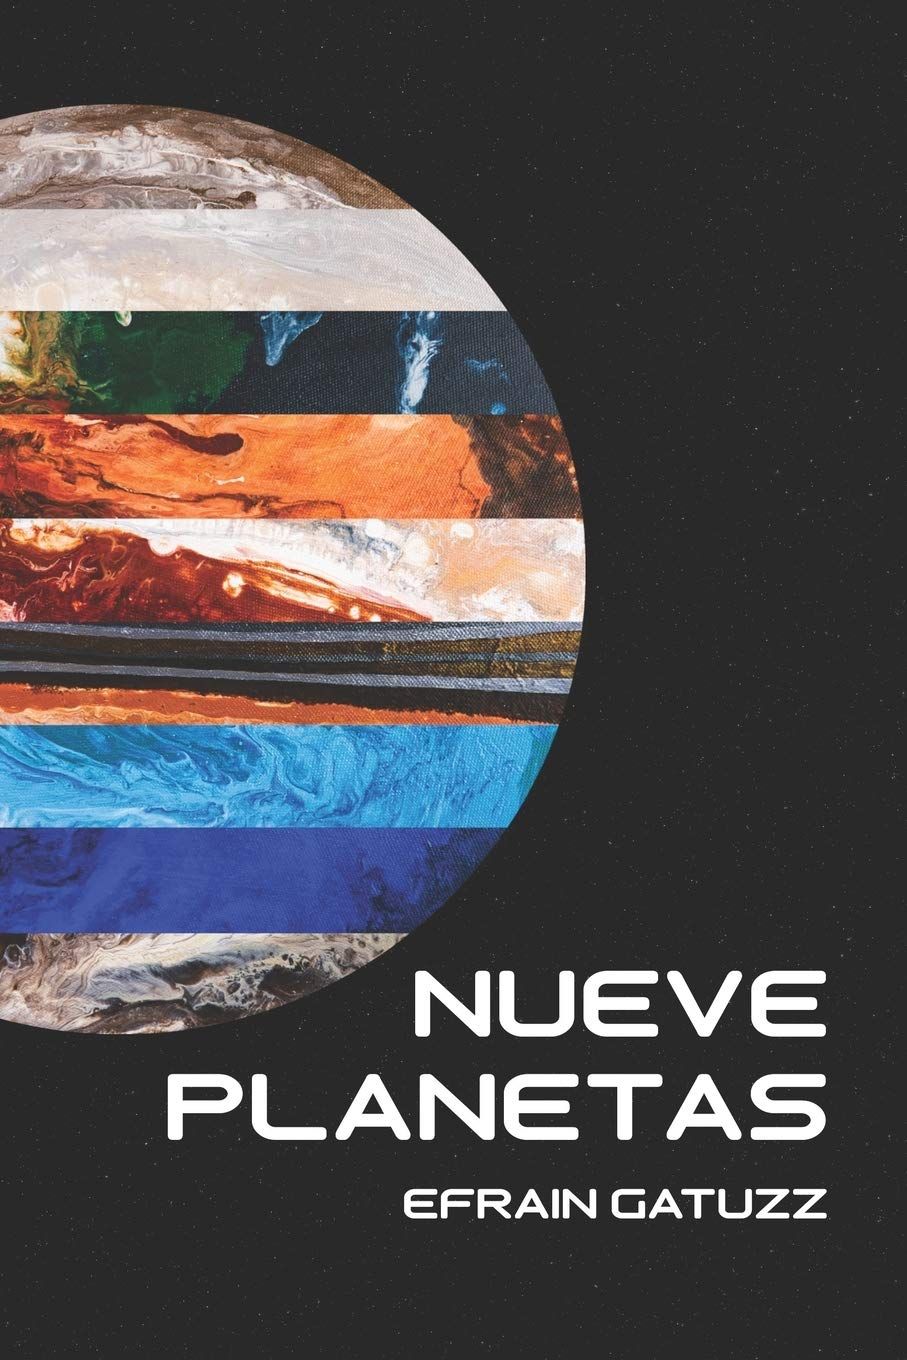 <div>El escritor Efrain Gatuzz revela el secreto de Plutón en su nueva obra 'Nueve planetas'</div>